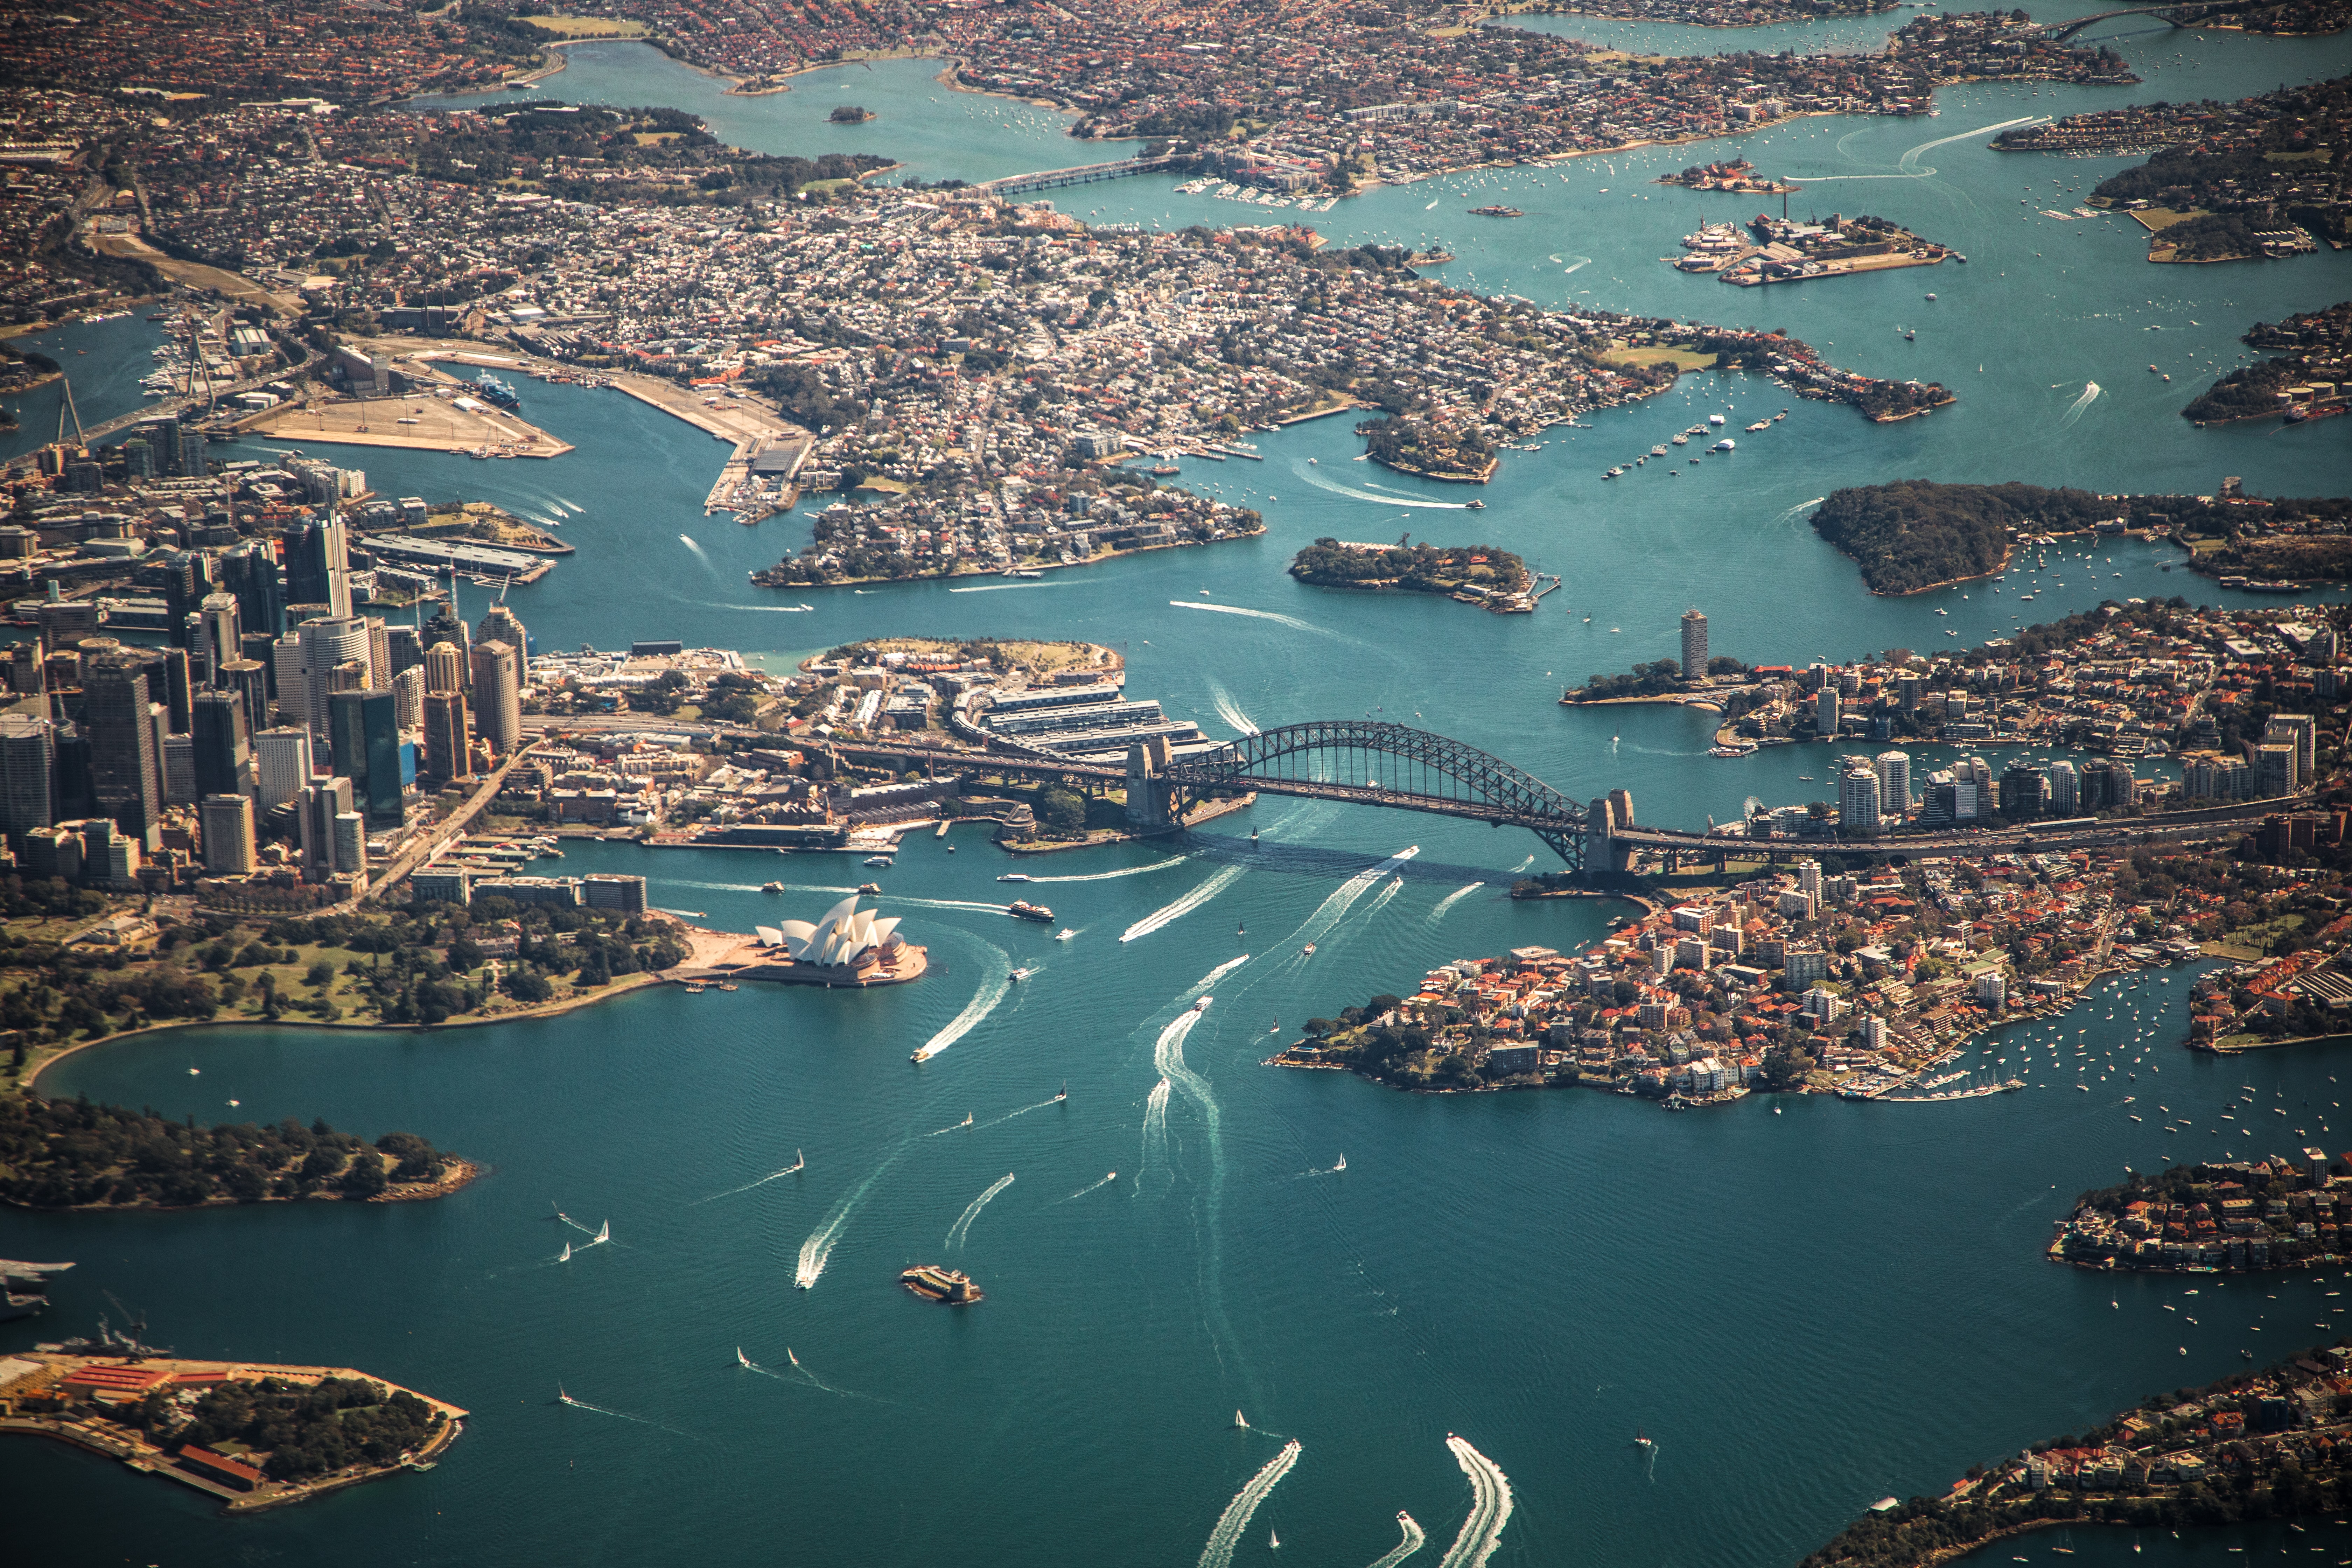 Sydney's bustling harbour